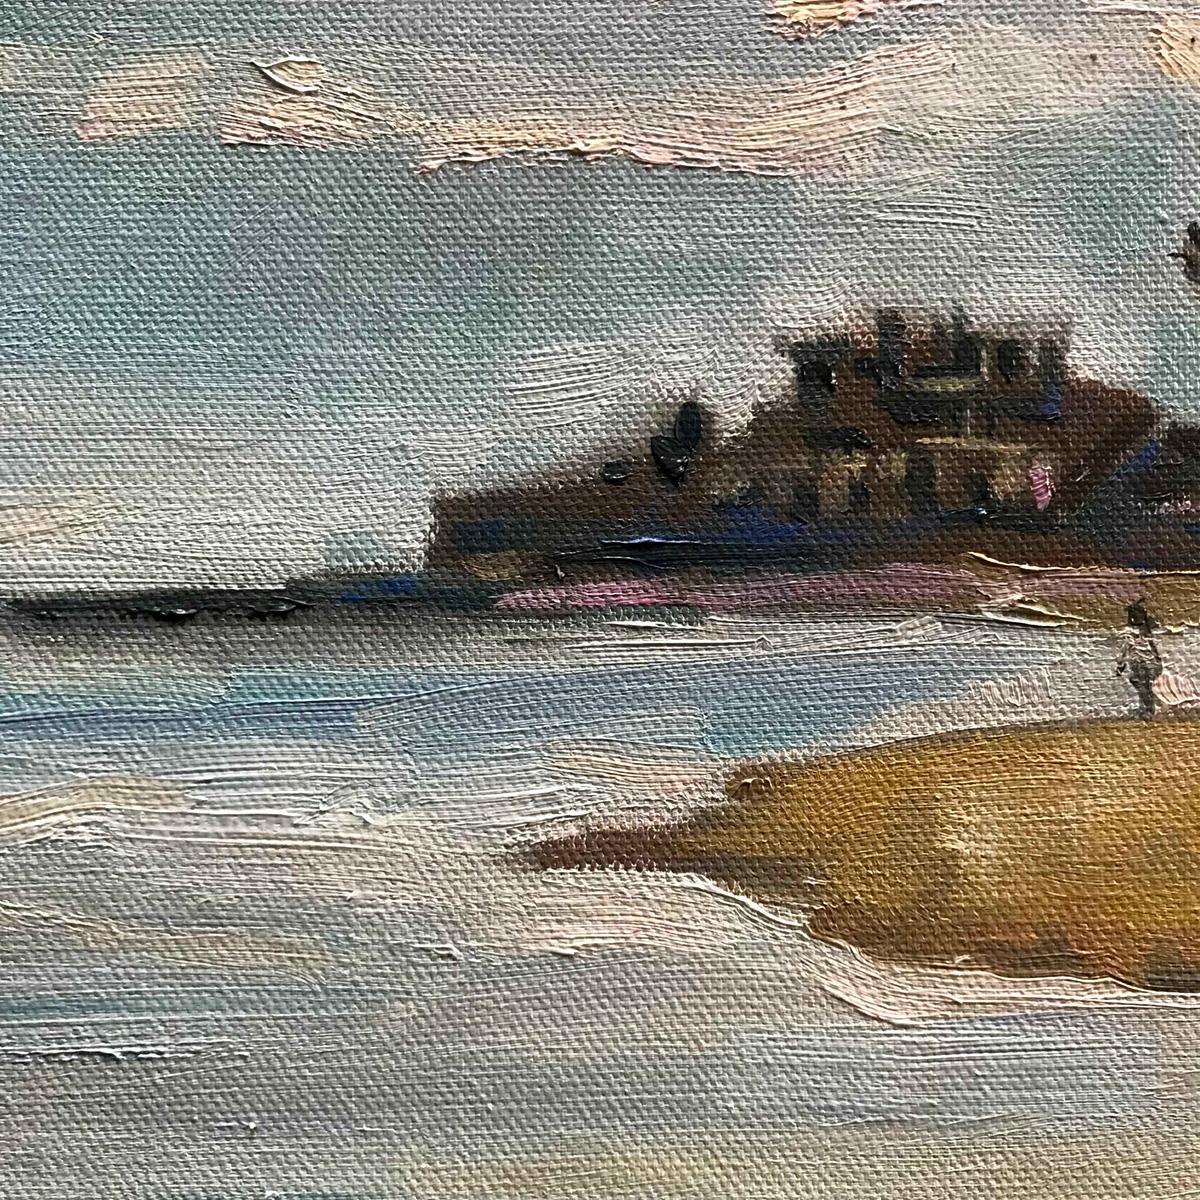 La Calas Beach, 2 ist ein Originalgemälde von Eleanor Woolley. Dieses Bild zeigt den Strand von La Cala in südwestlicher Richtung. Die Gebäude, die auf die Uferlinie treffen, liegen im Schatten und färben sich lila und altrosa. Die Menschen